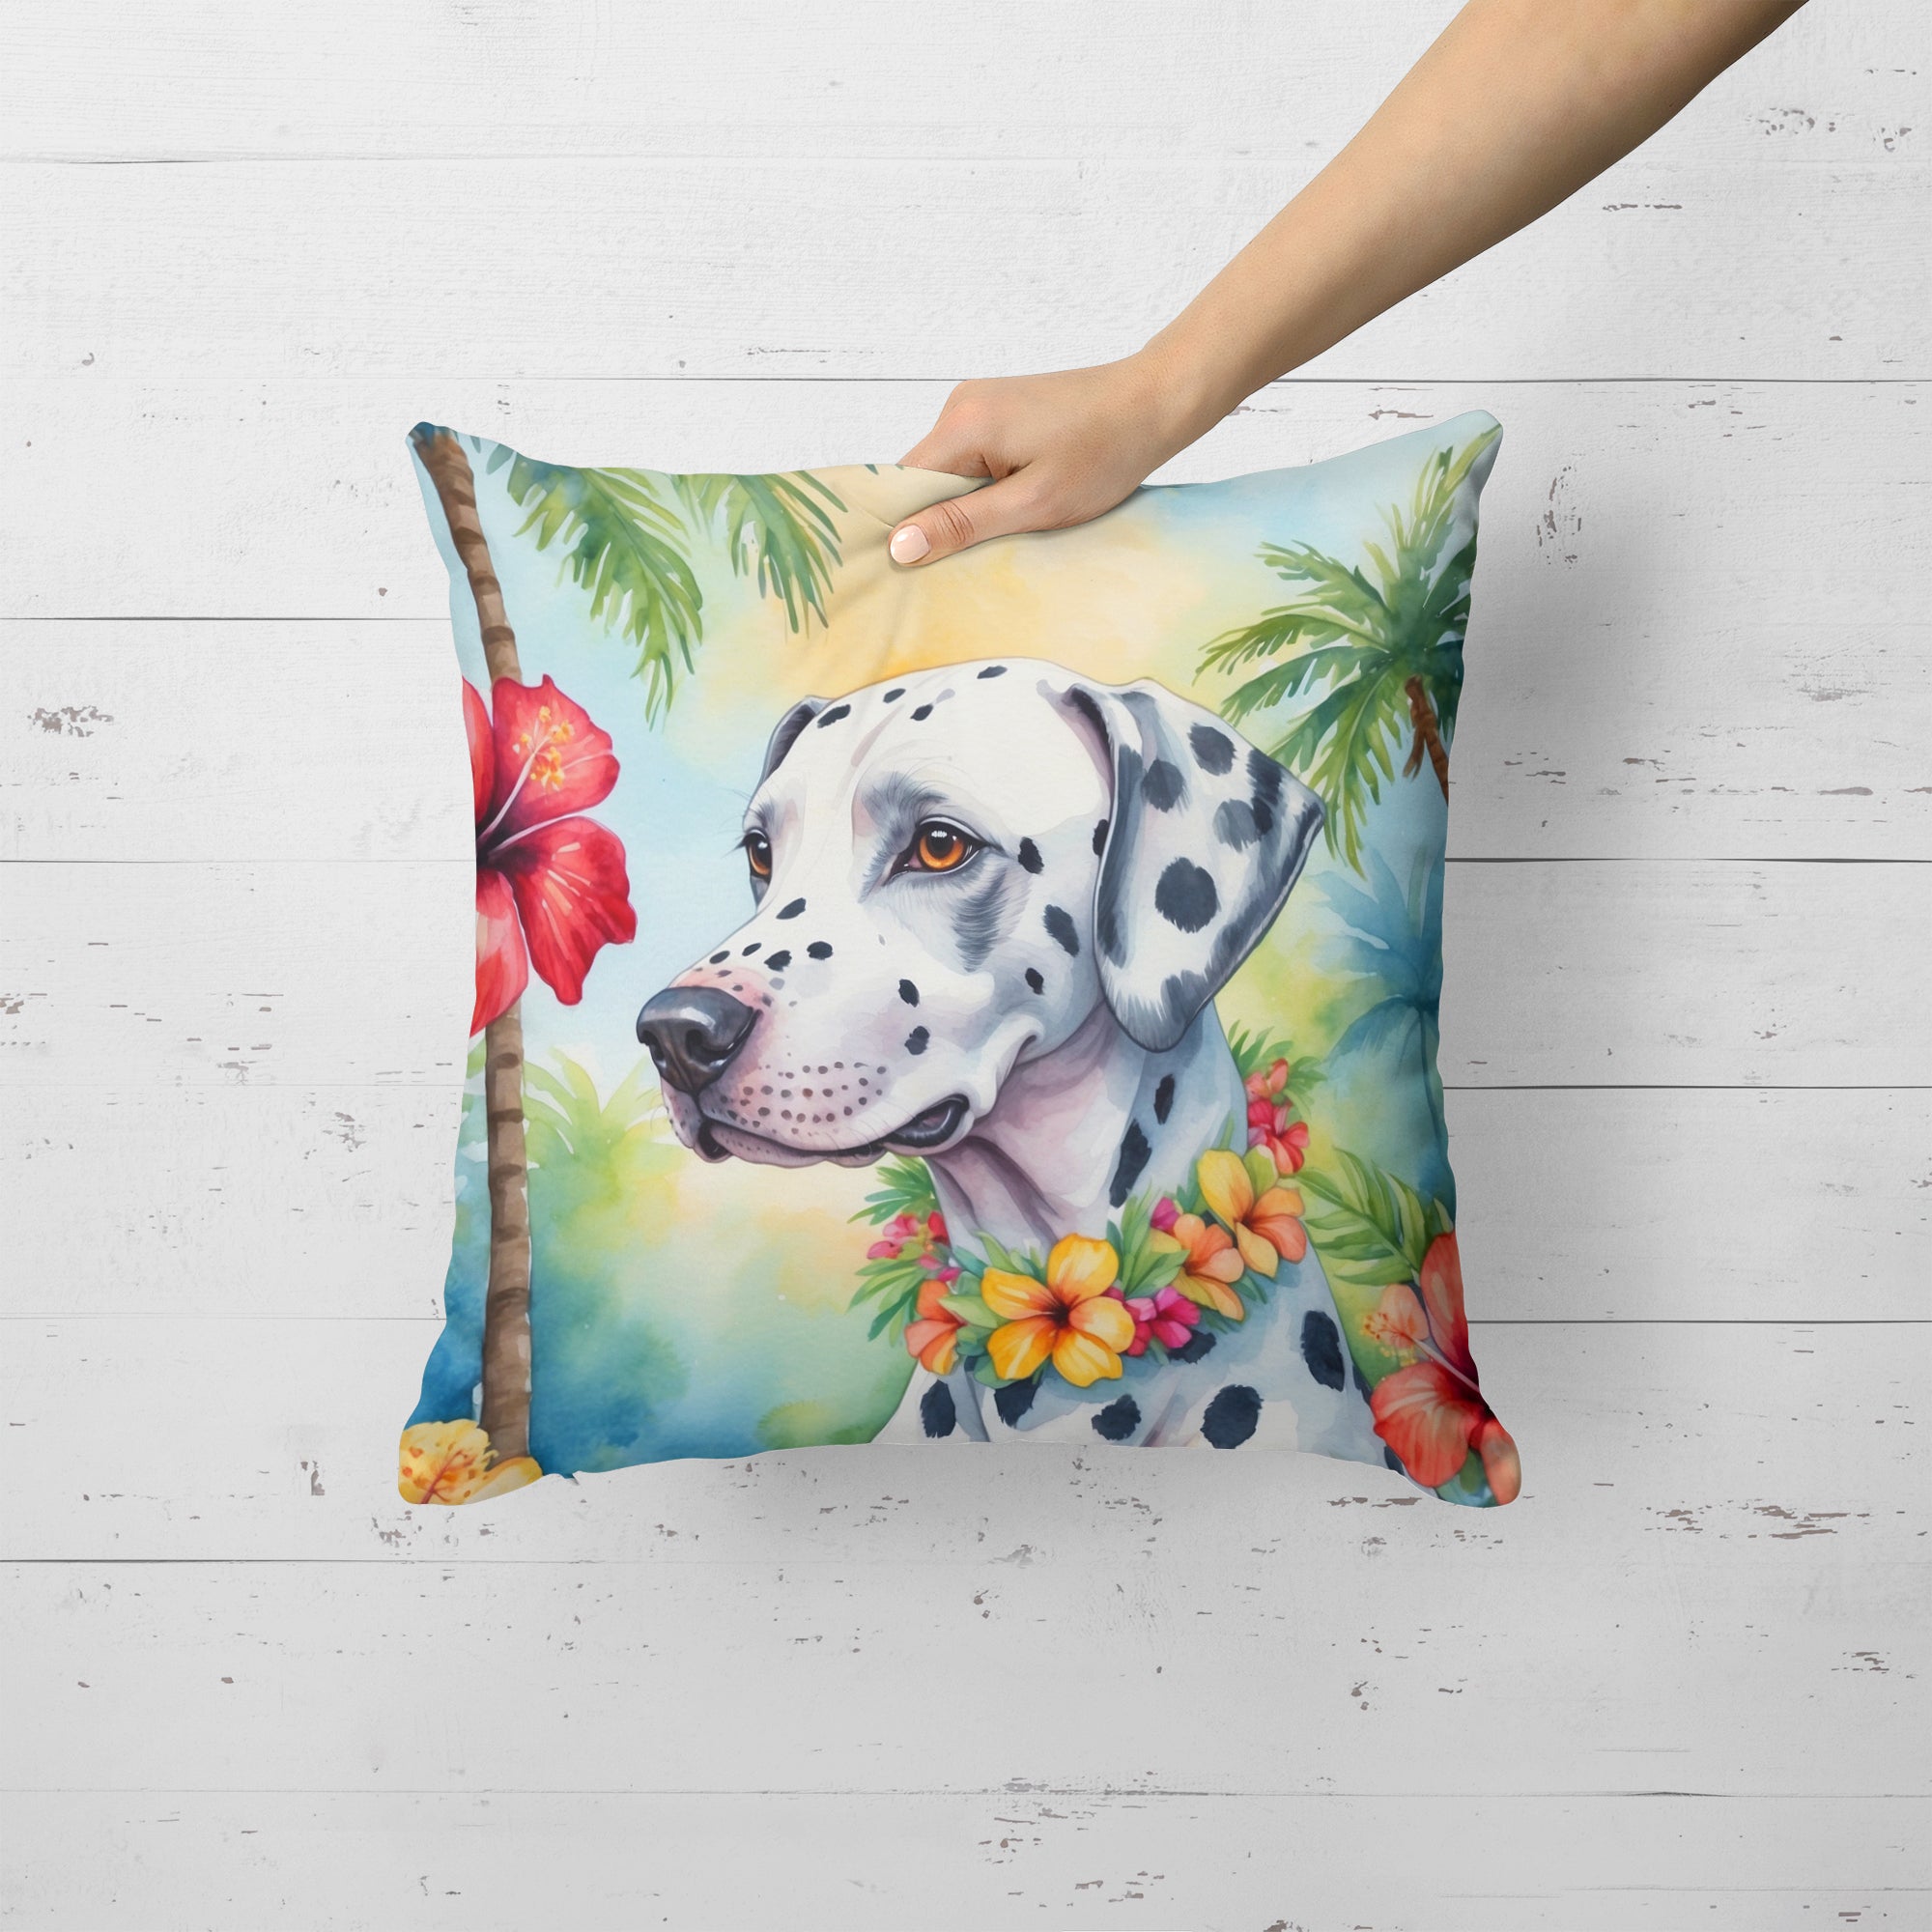 Buy this Dalmatian Luau Throw Pillow